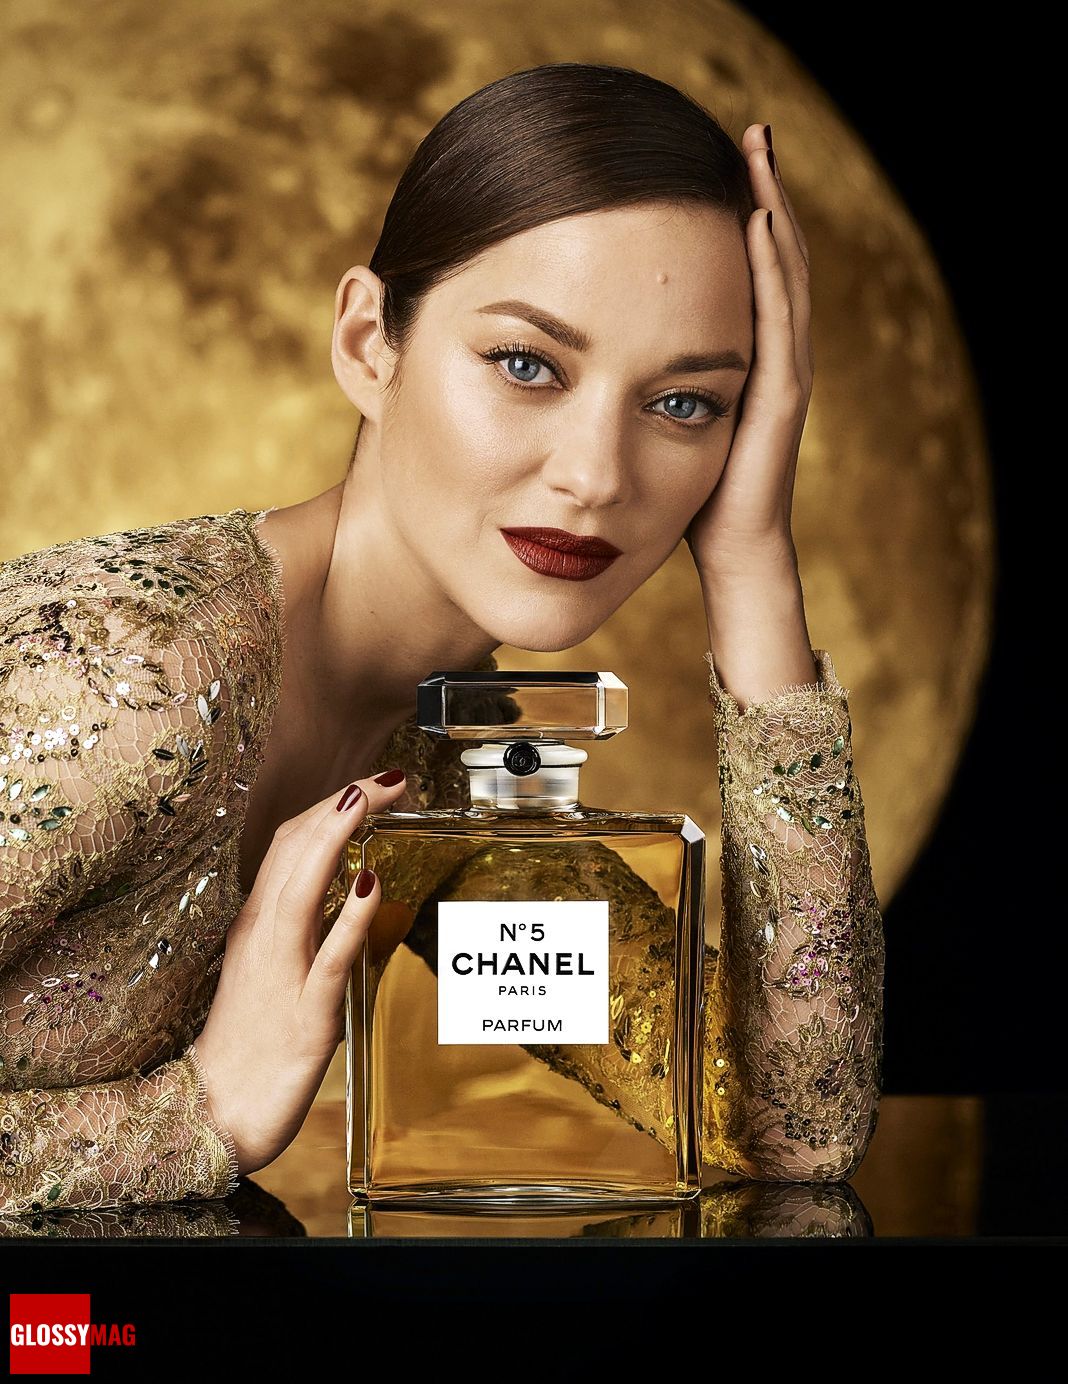 Марион Котийяр в рекламной кампании Chanel N°5, 2020 г.